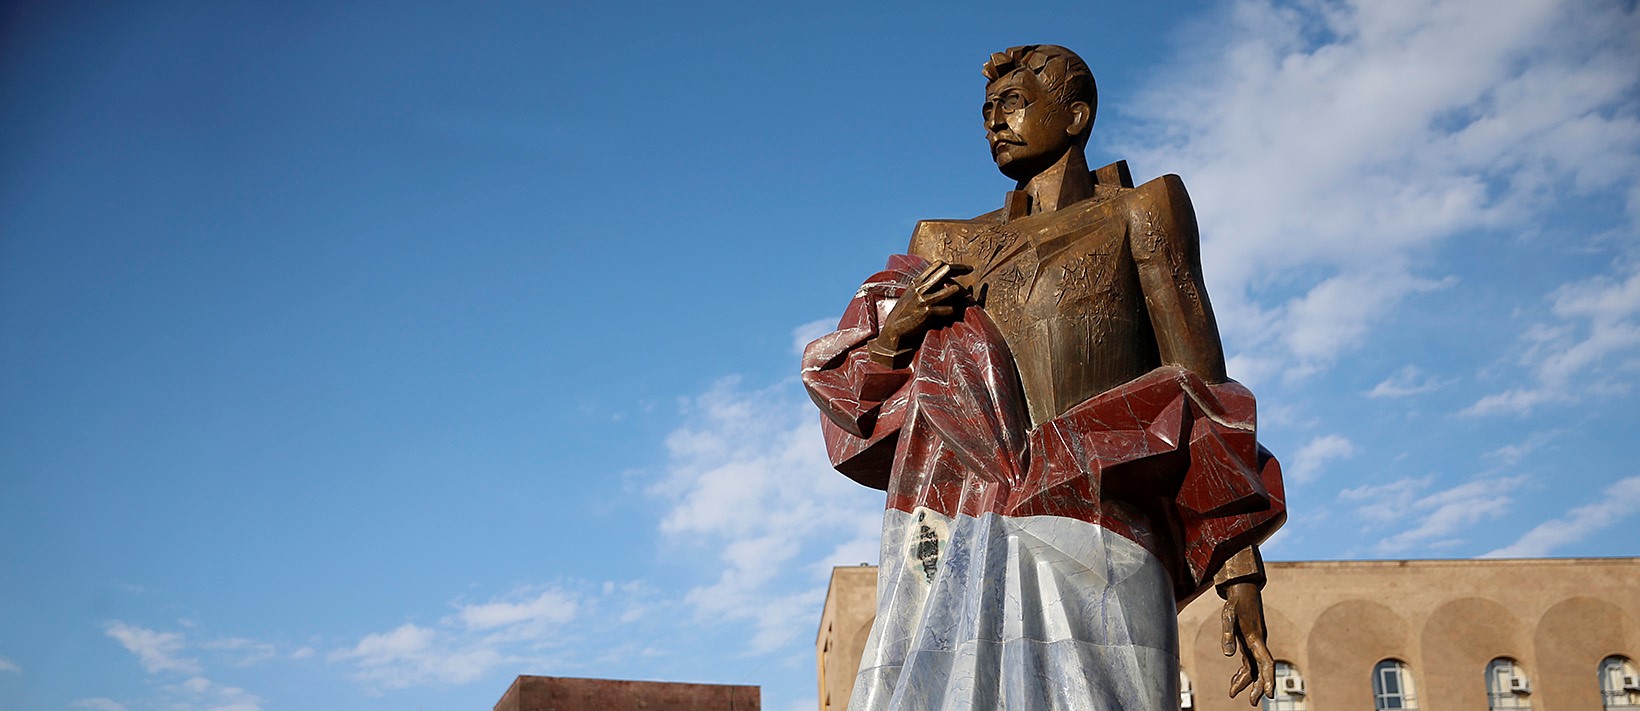 Մանդելայի արձանը նրա էքնահողեքին է բացվել